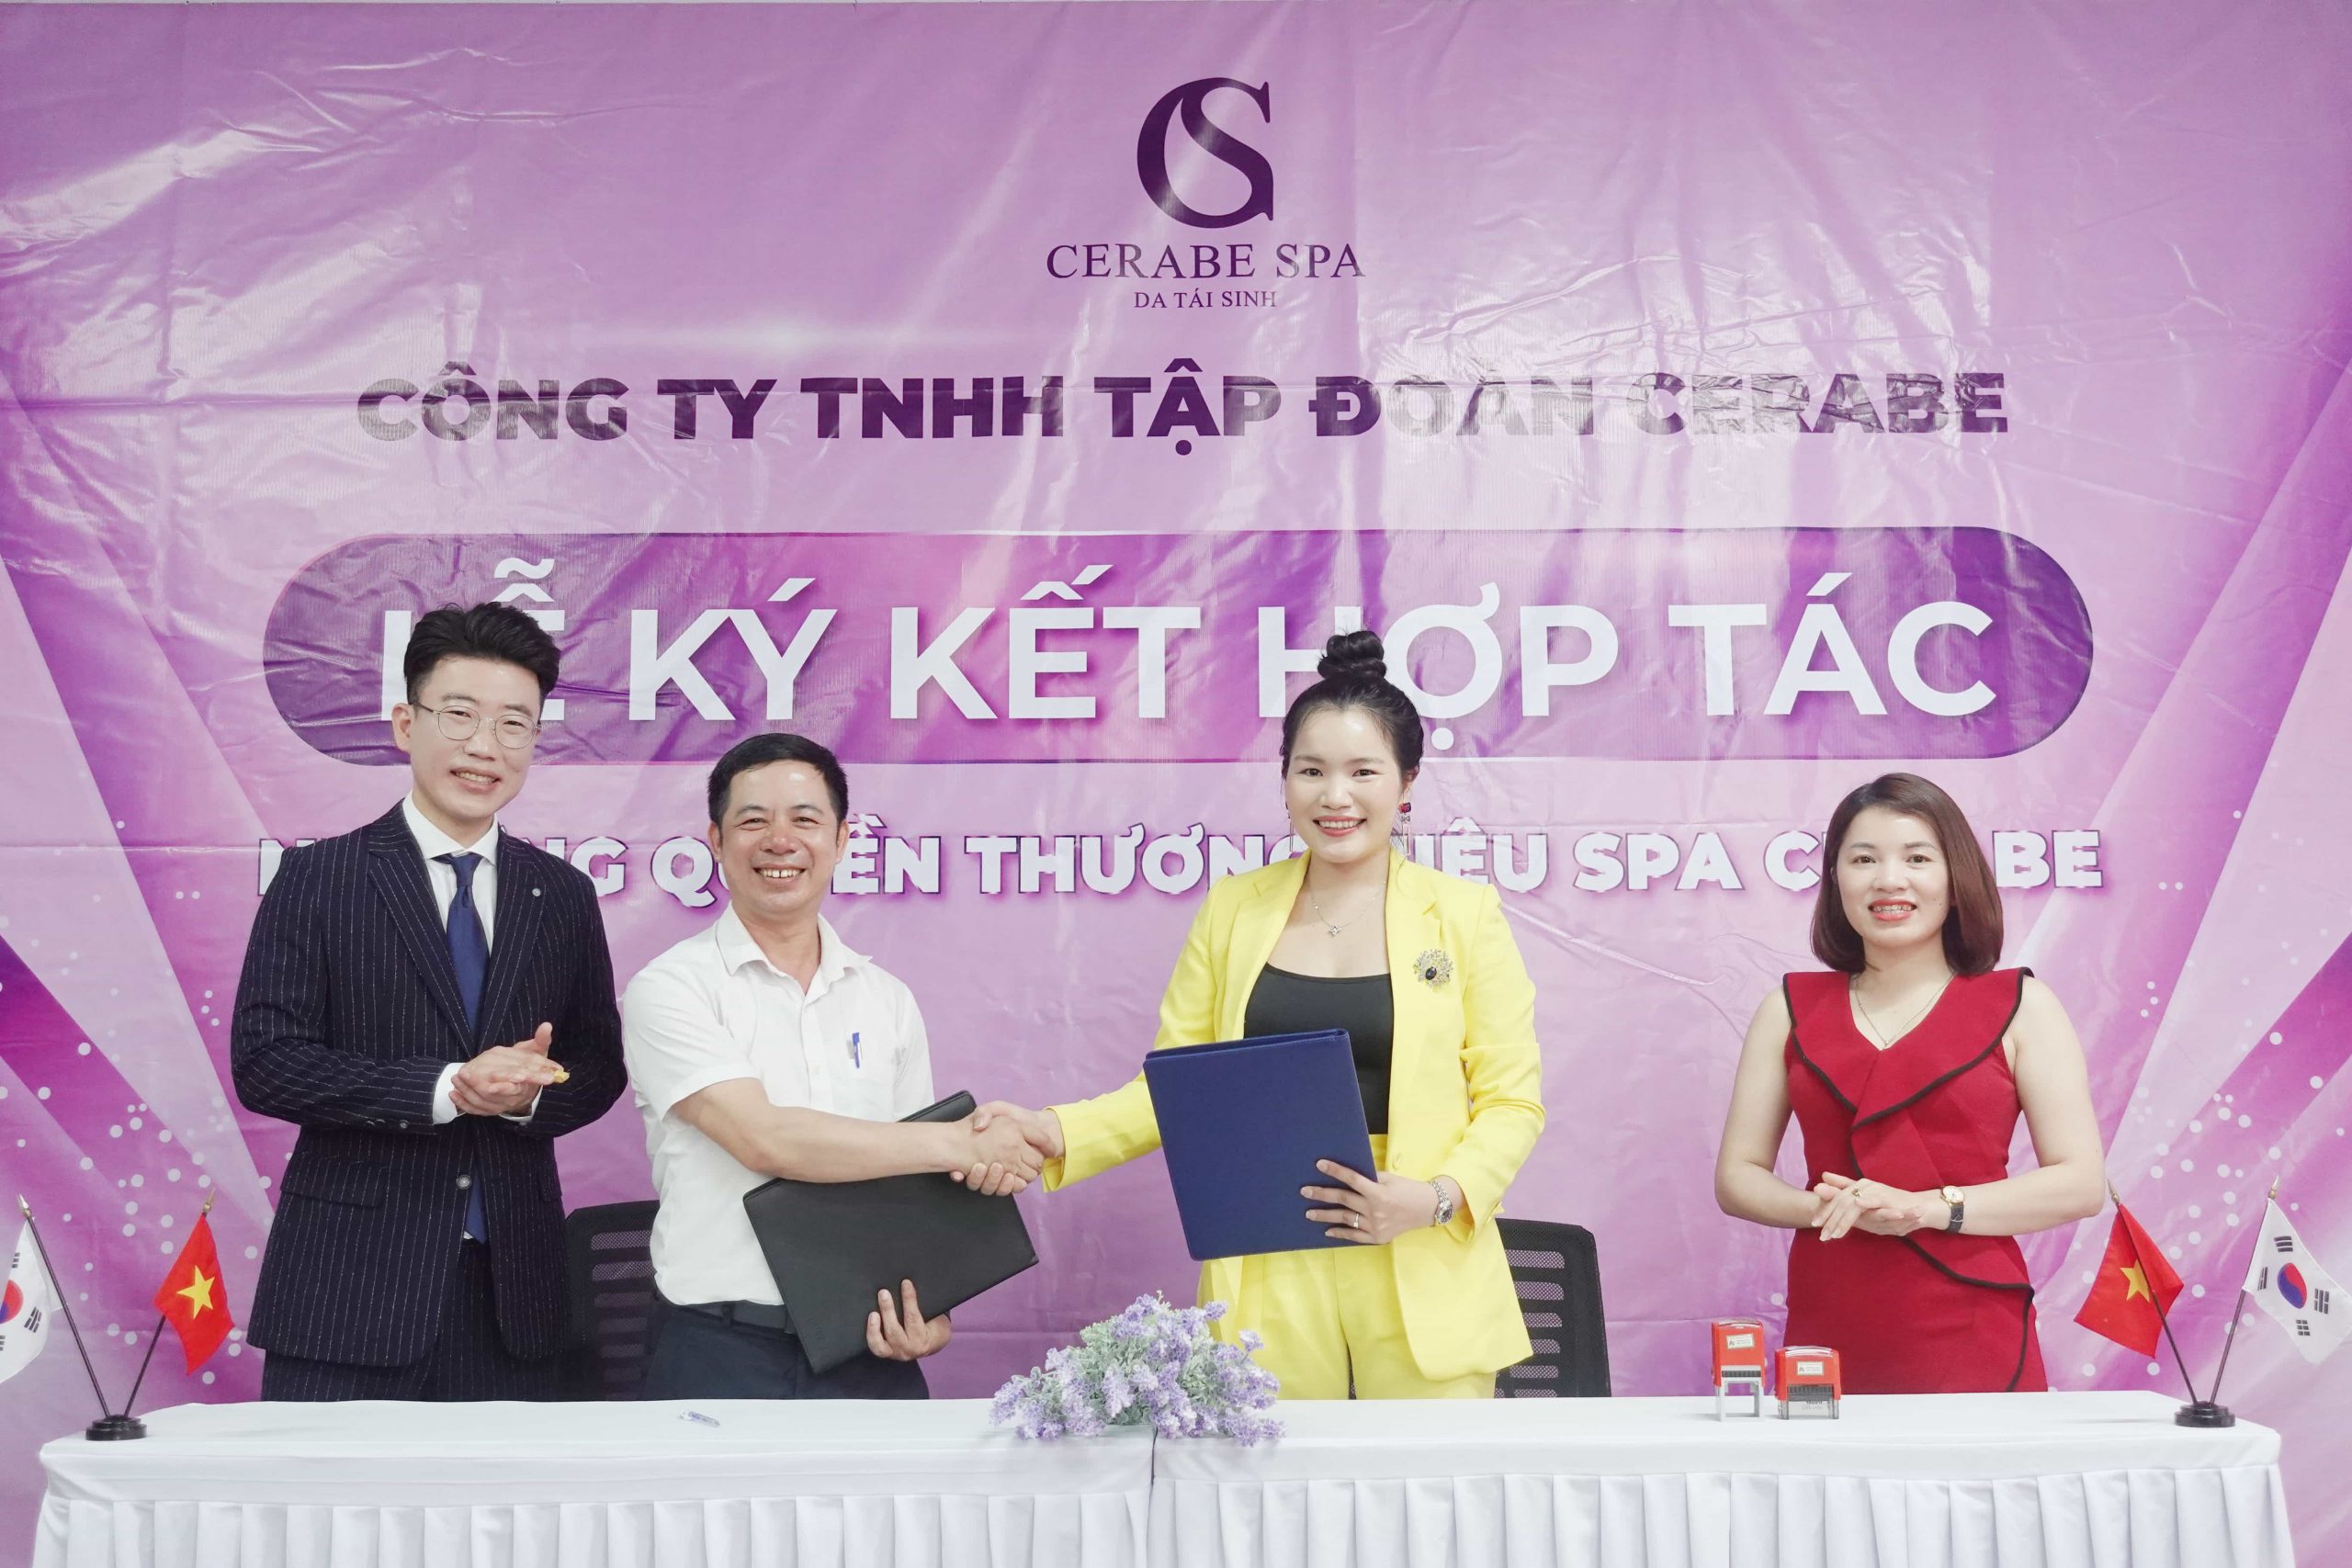 Ký kết nhượng quyền thương hiệu Cerabe Spa với CEO Nguyễn Văn Túc diễn ra thành công tốt đẹp